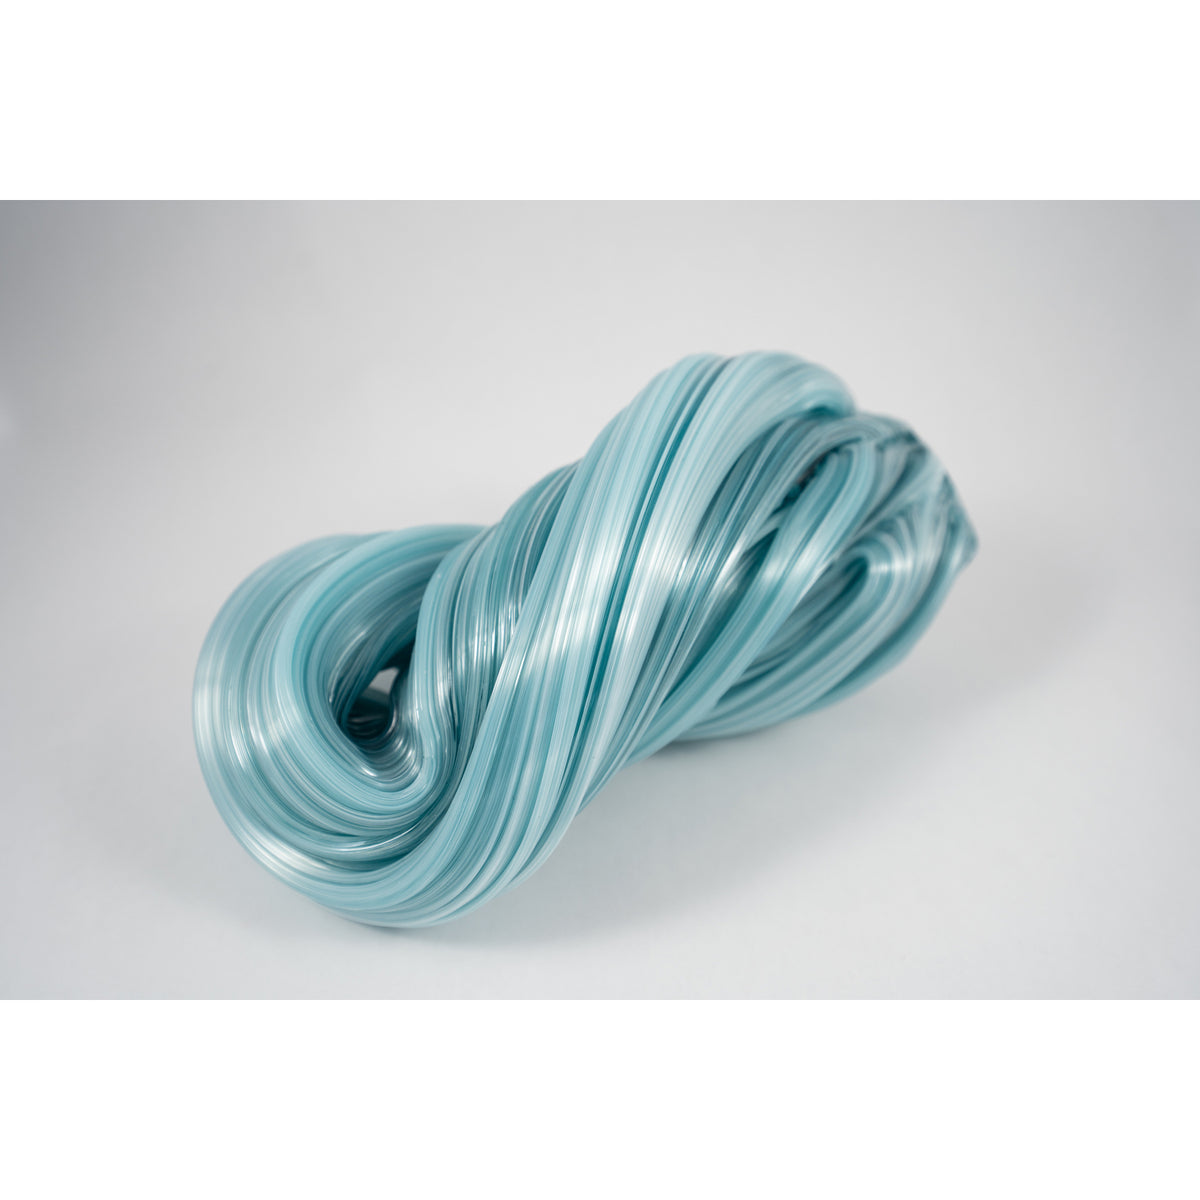 Taygan Appleton - Silk Knot Cool Mint, 4" x 8.5" x 3.5"